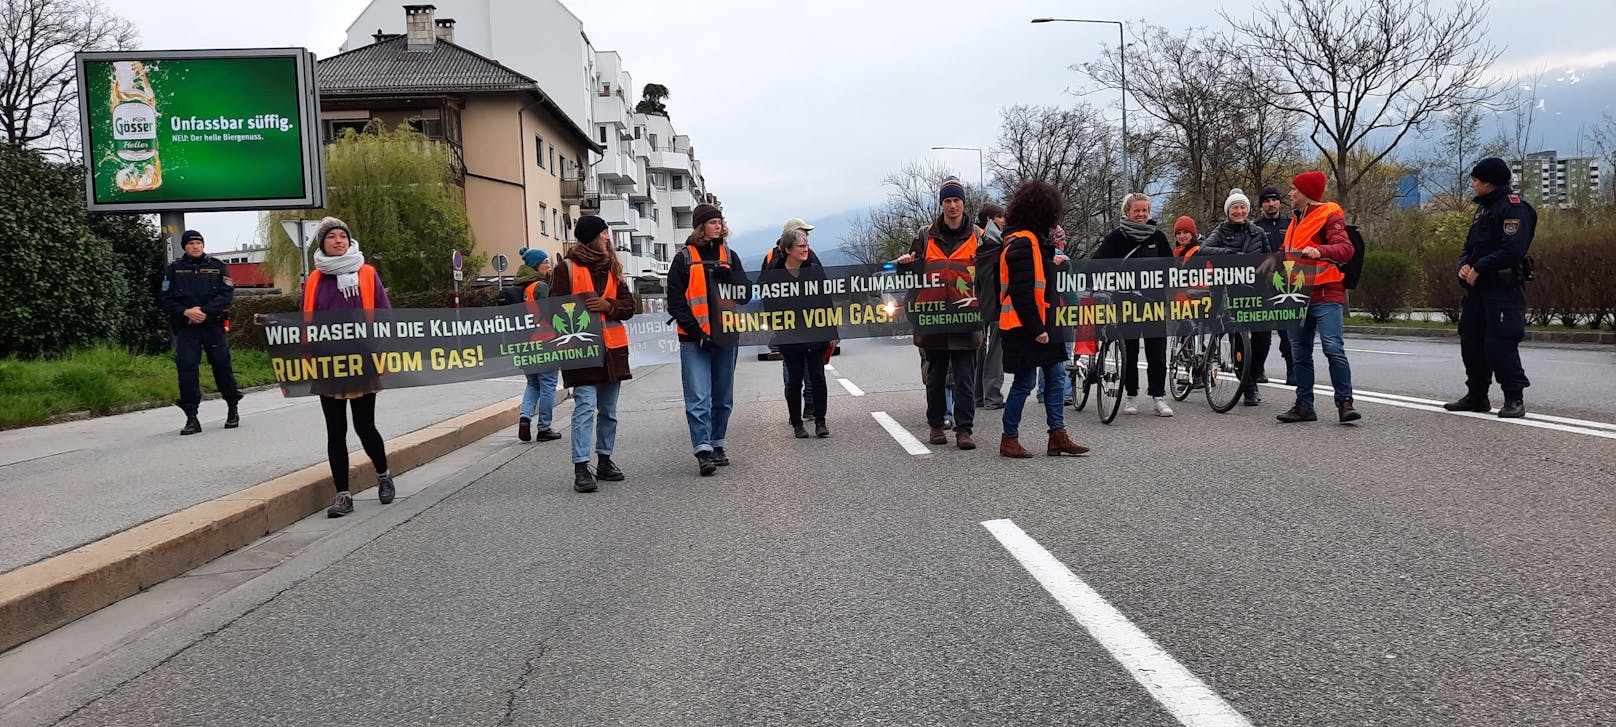 Am Dienstag wurde in Innsbruck demonstriert.